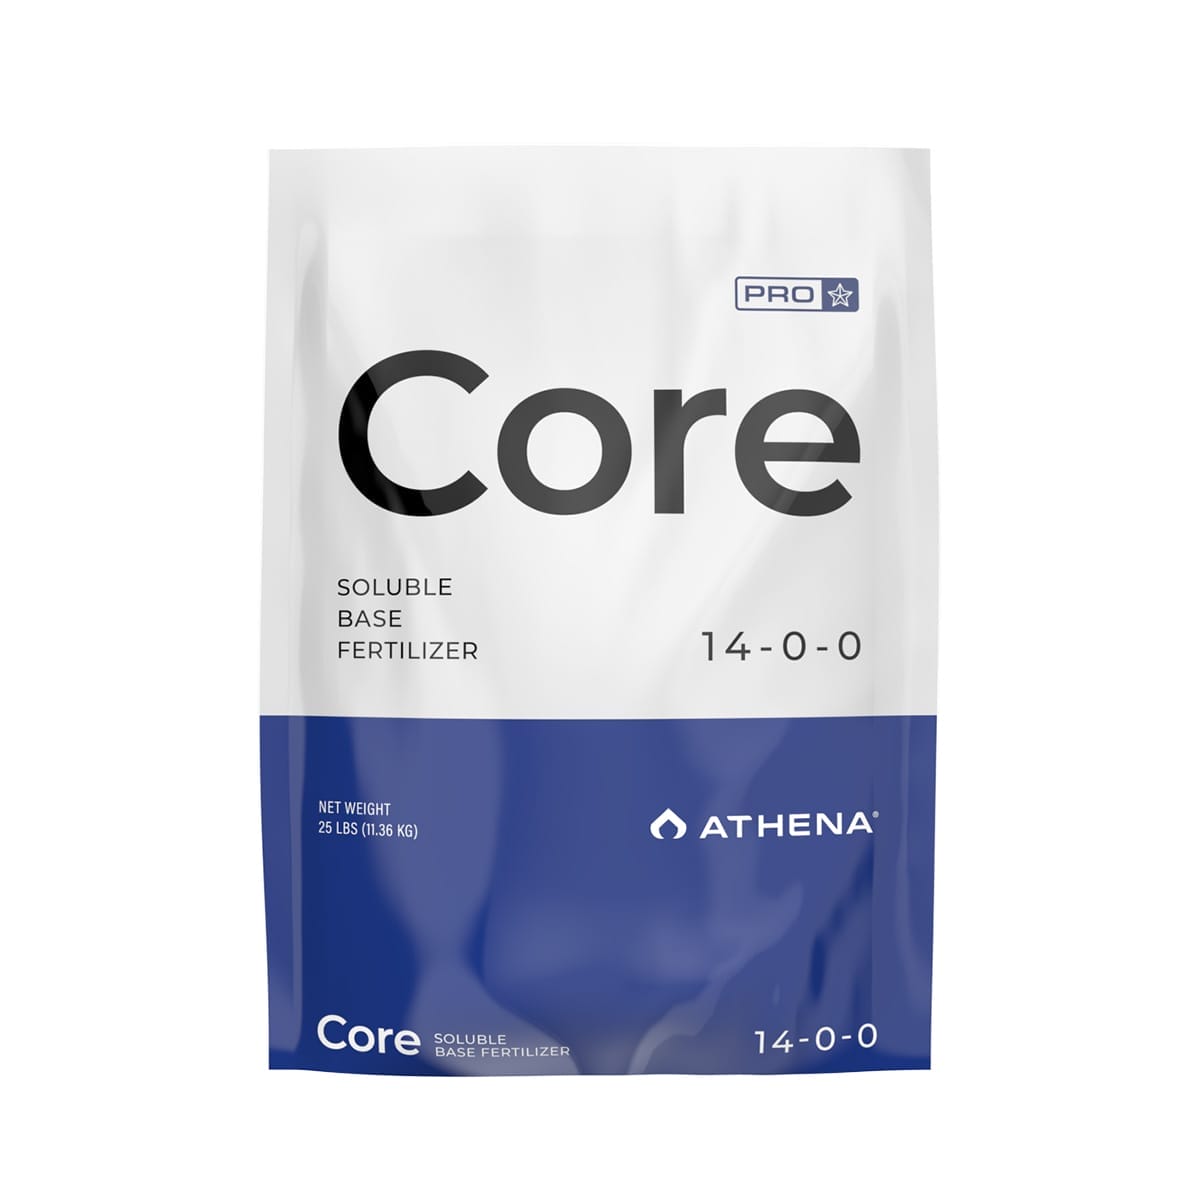 New Athena Pro Core 25lb Bag